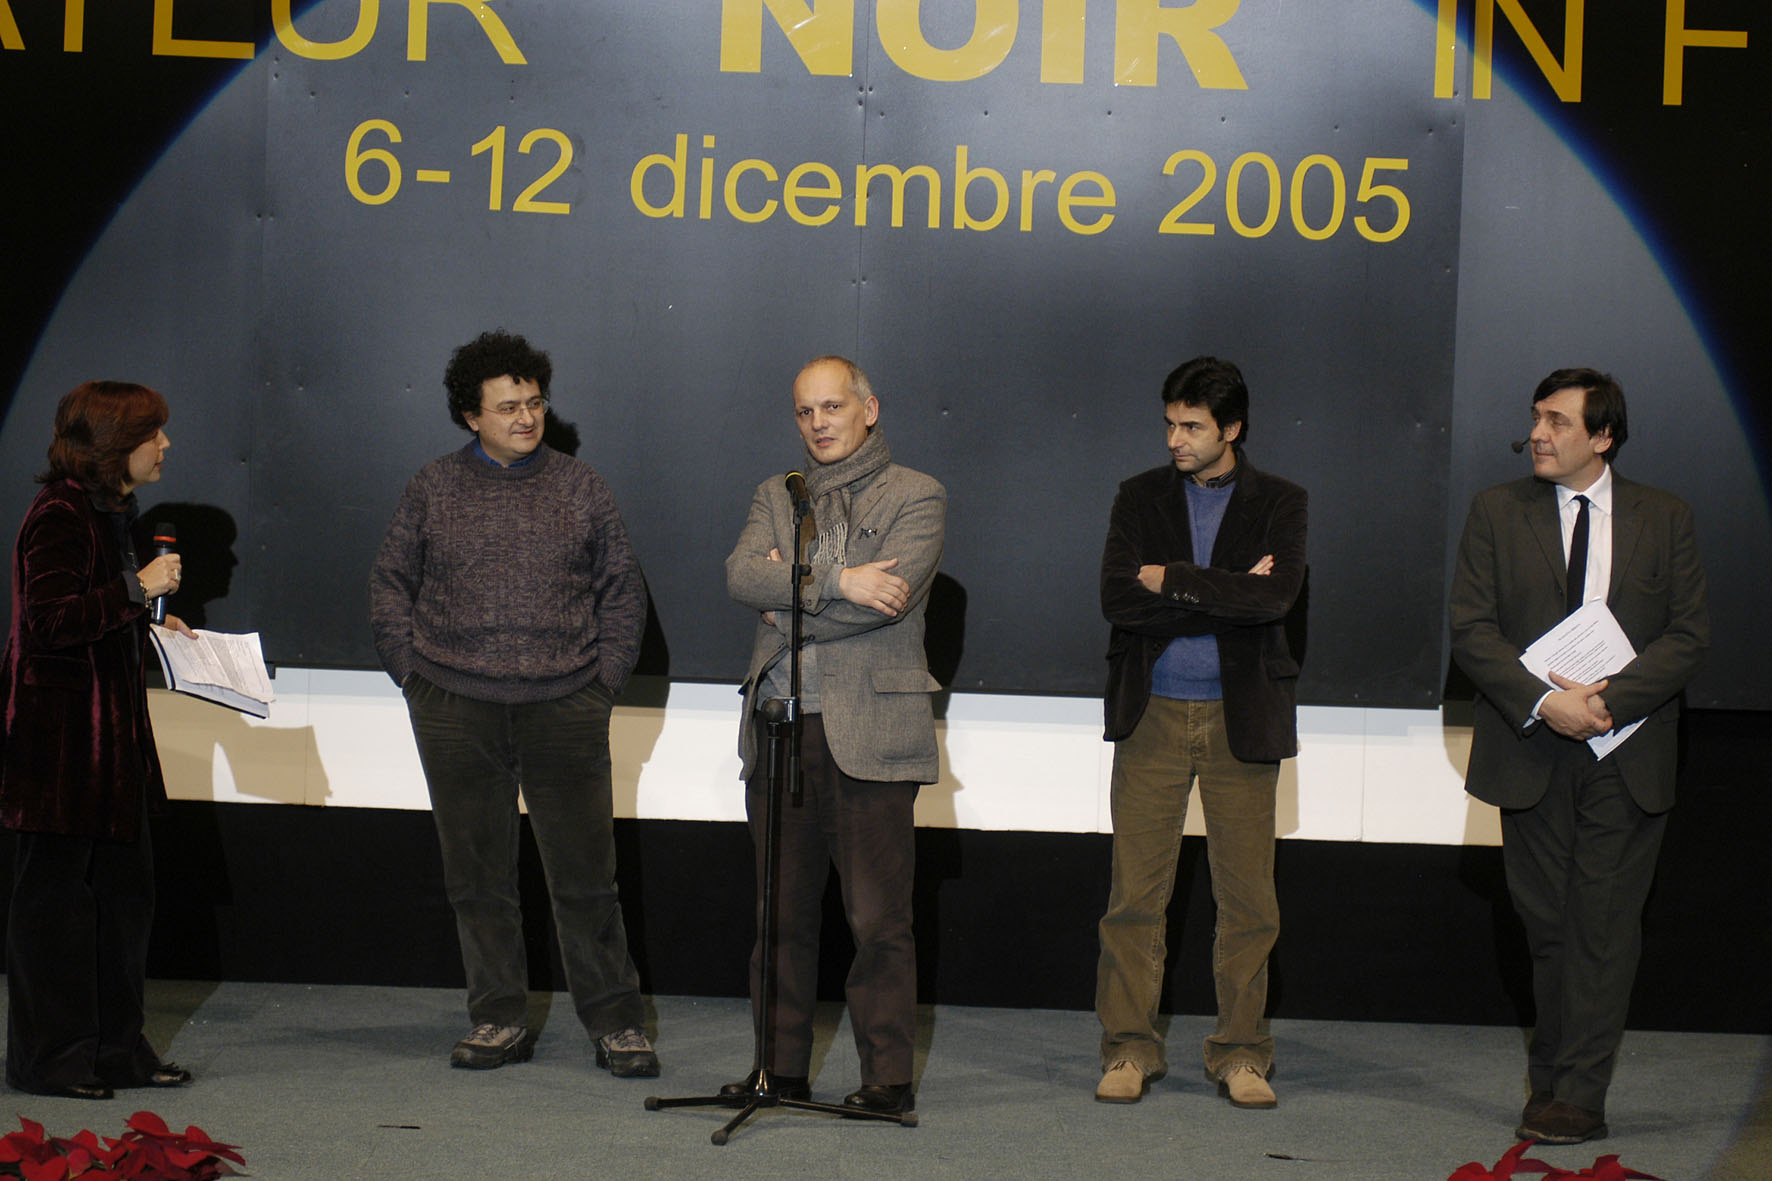 La cinquina dei finalisti (meno i due assenti giustificati) all'inaugurazione del festival. Fra i due presentatori: Gianni Biondillo, Leonardo Gori, Stefano Tura.